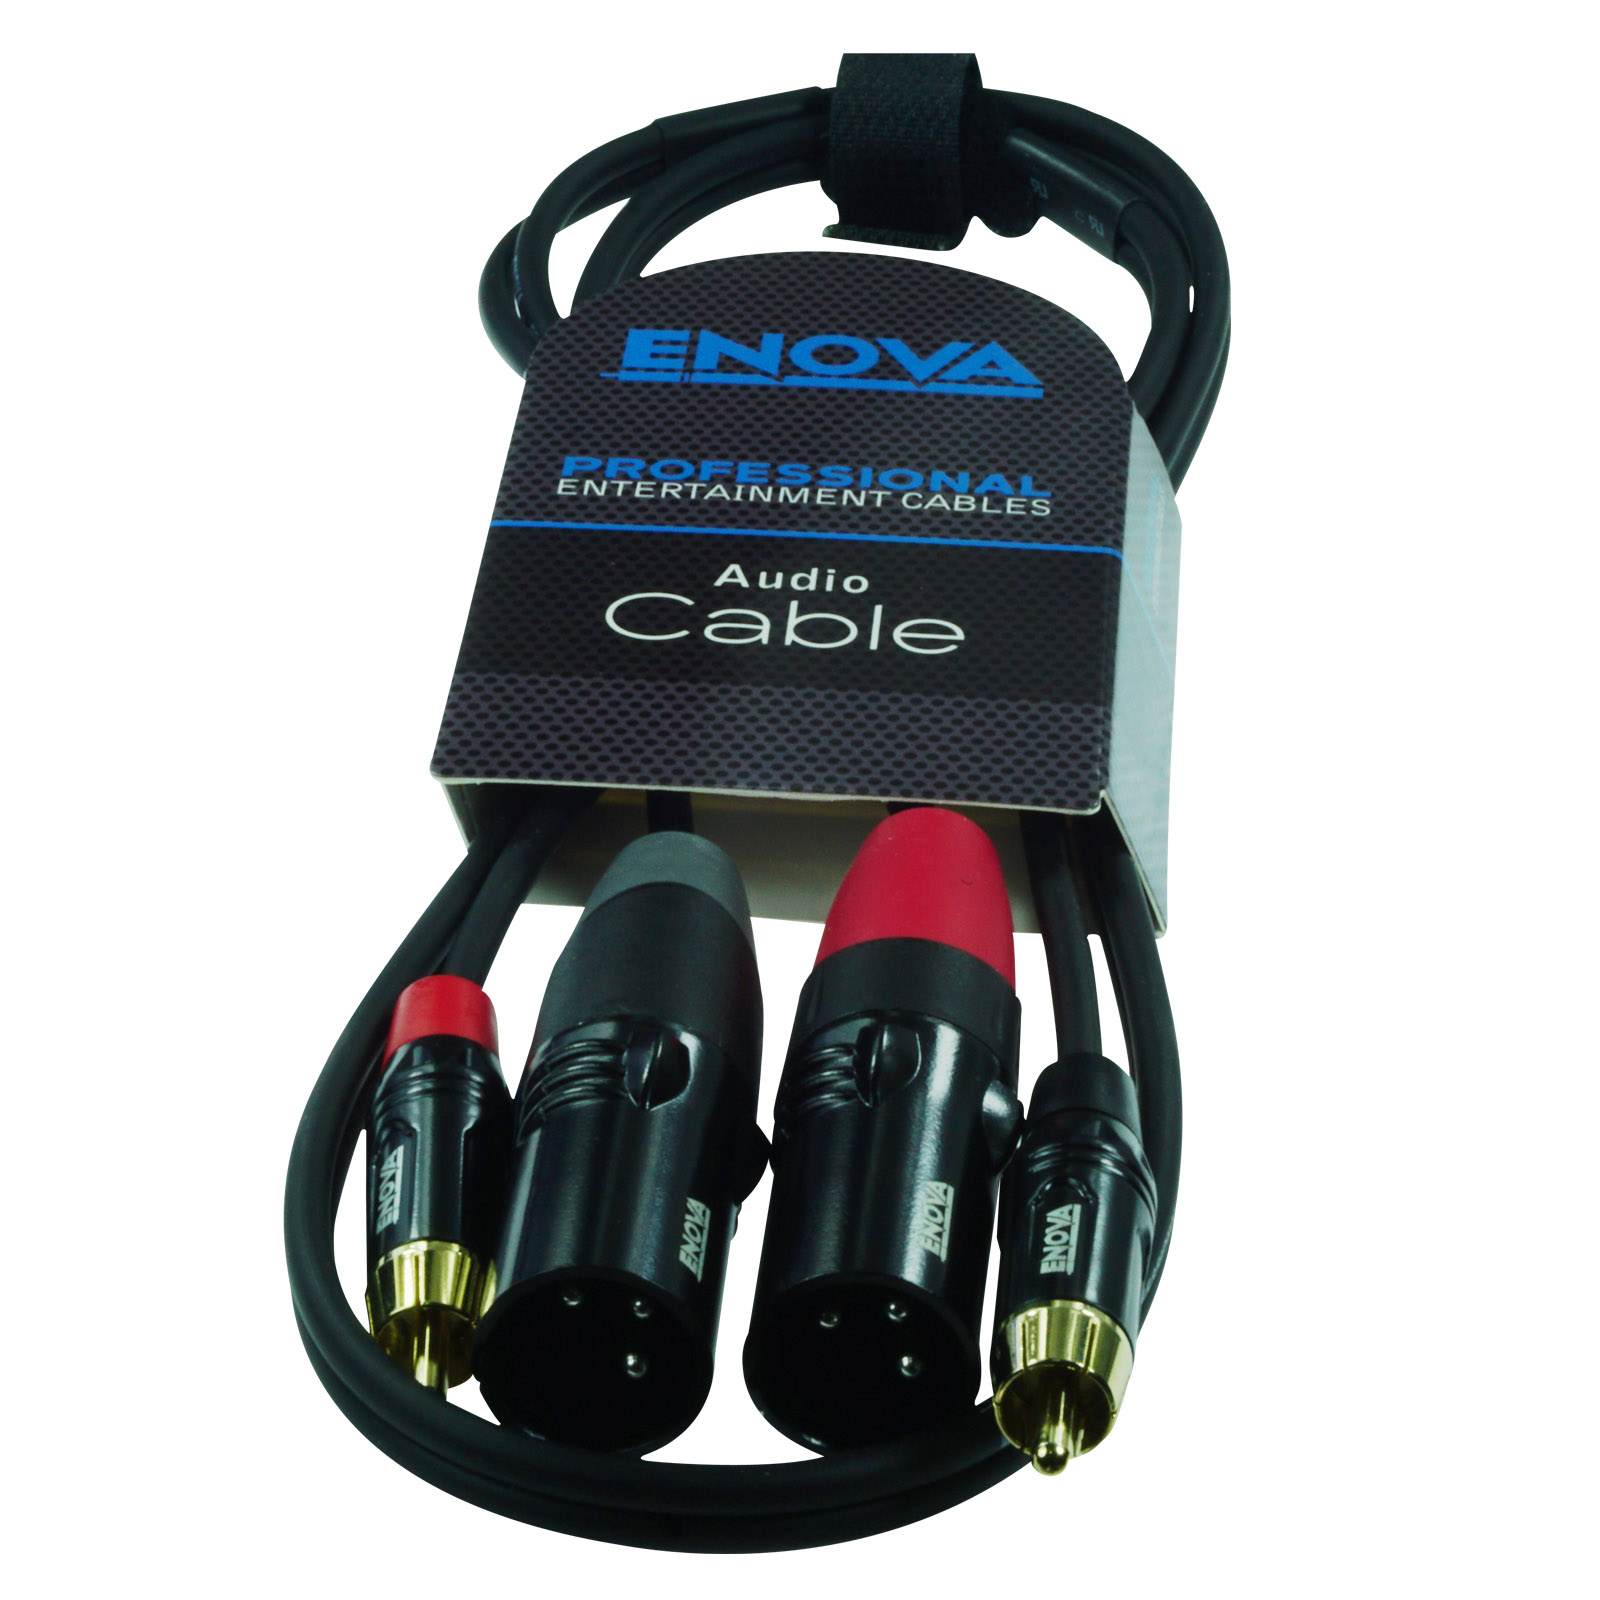 ENOVA, câble XLR de 7 mètres pour les applications audio professionnelles